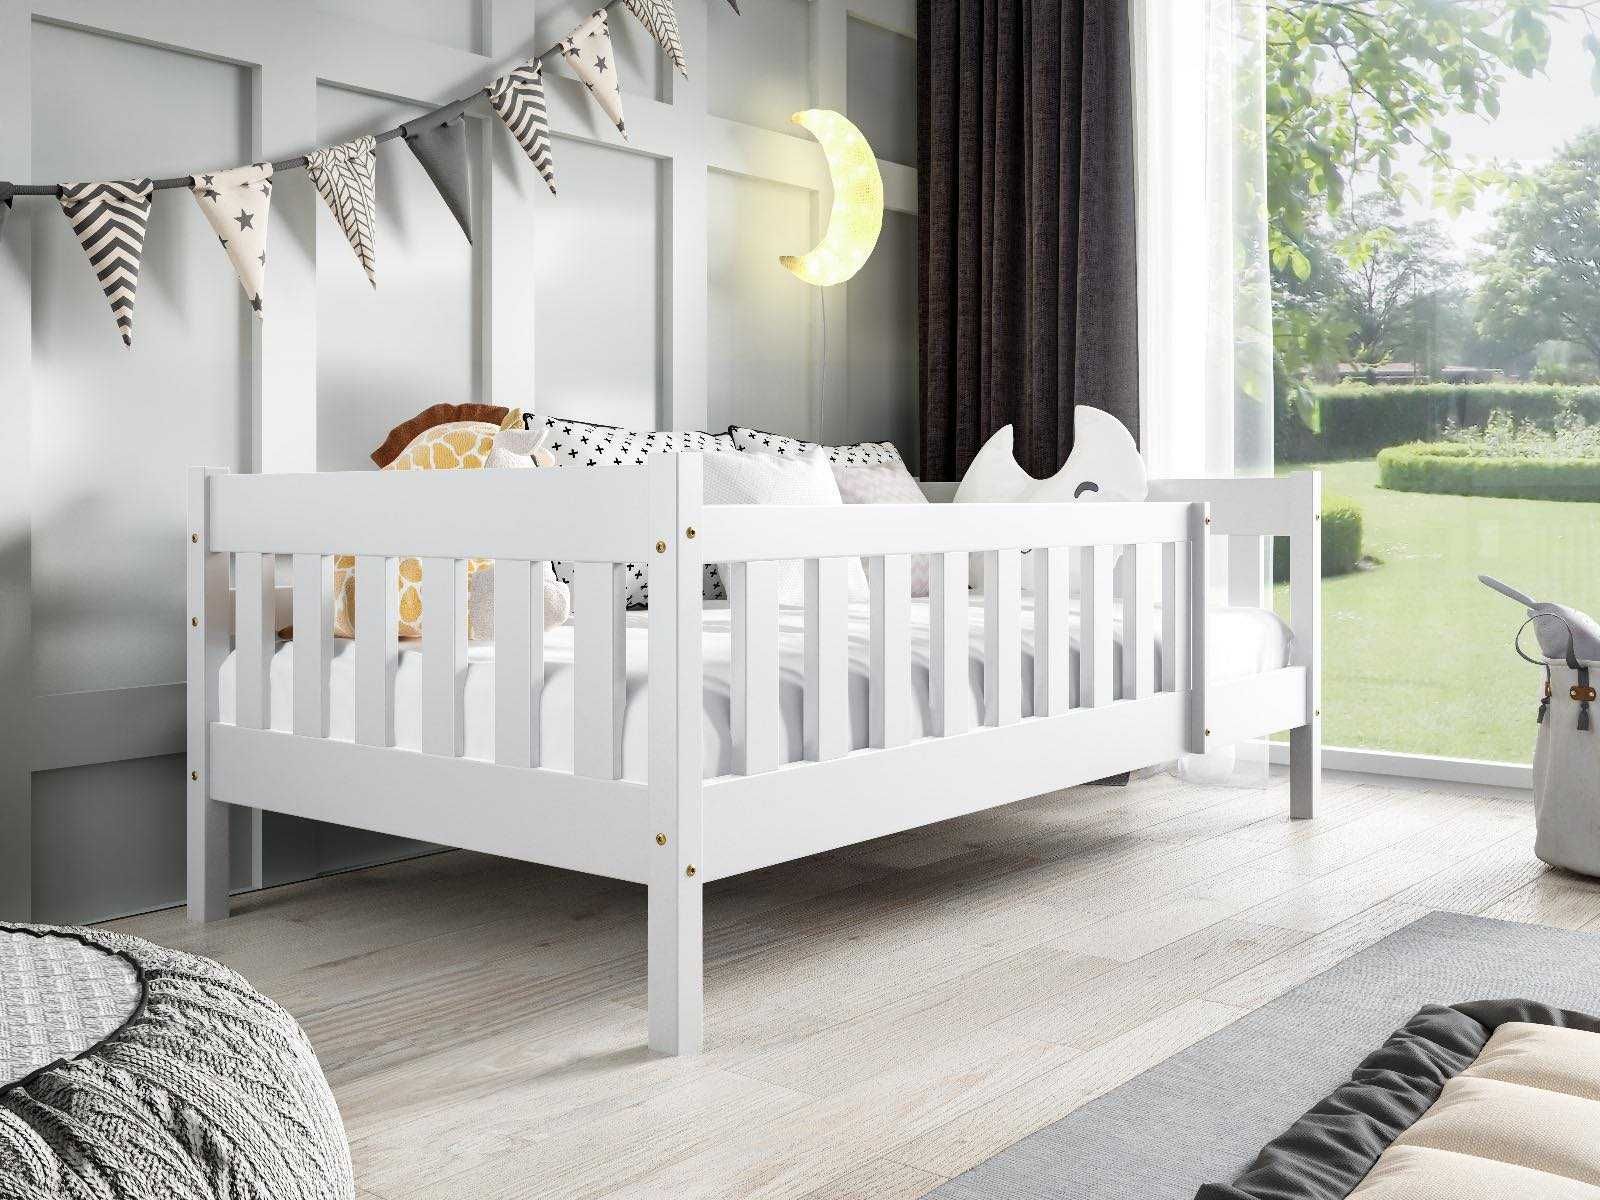 Łóżko dla dzieci 1 osobowe klasyczne drewniane POLA + materac